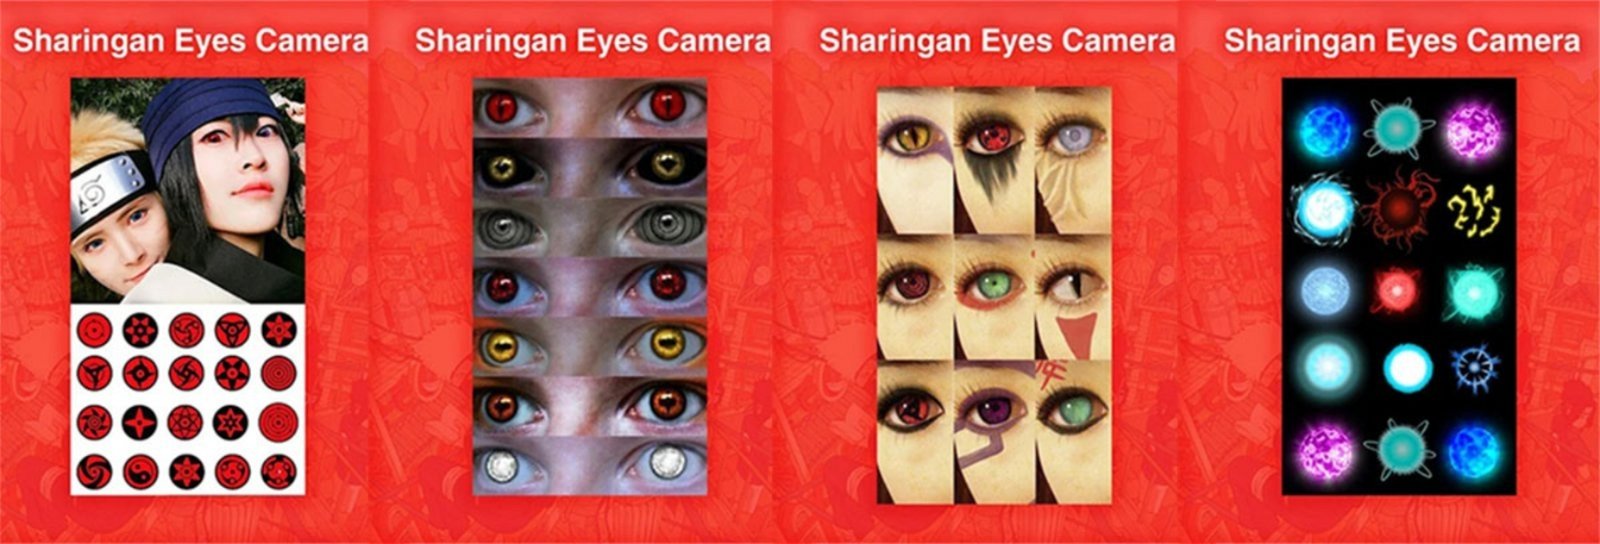 app Sharingan eye